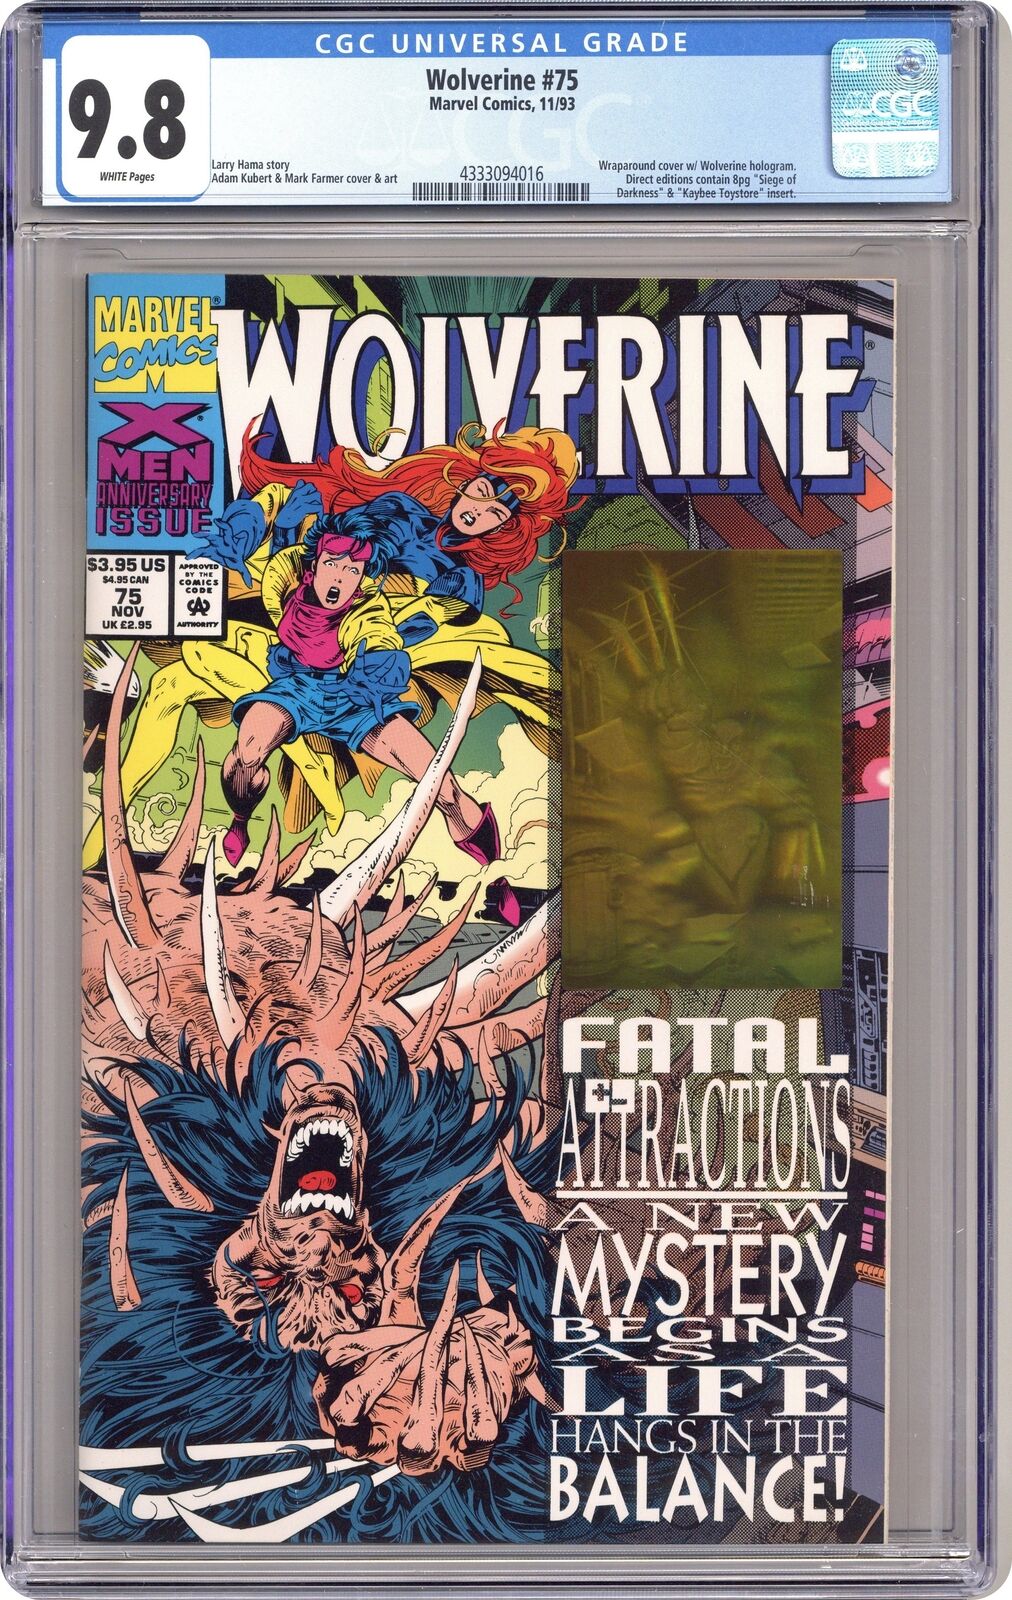 Wolverine #75D CGC 9.8 1993 4333094016 1st bone claws